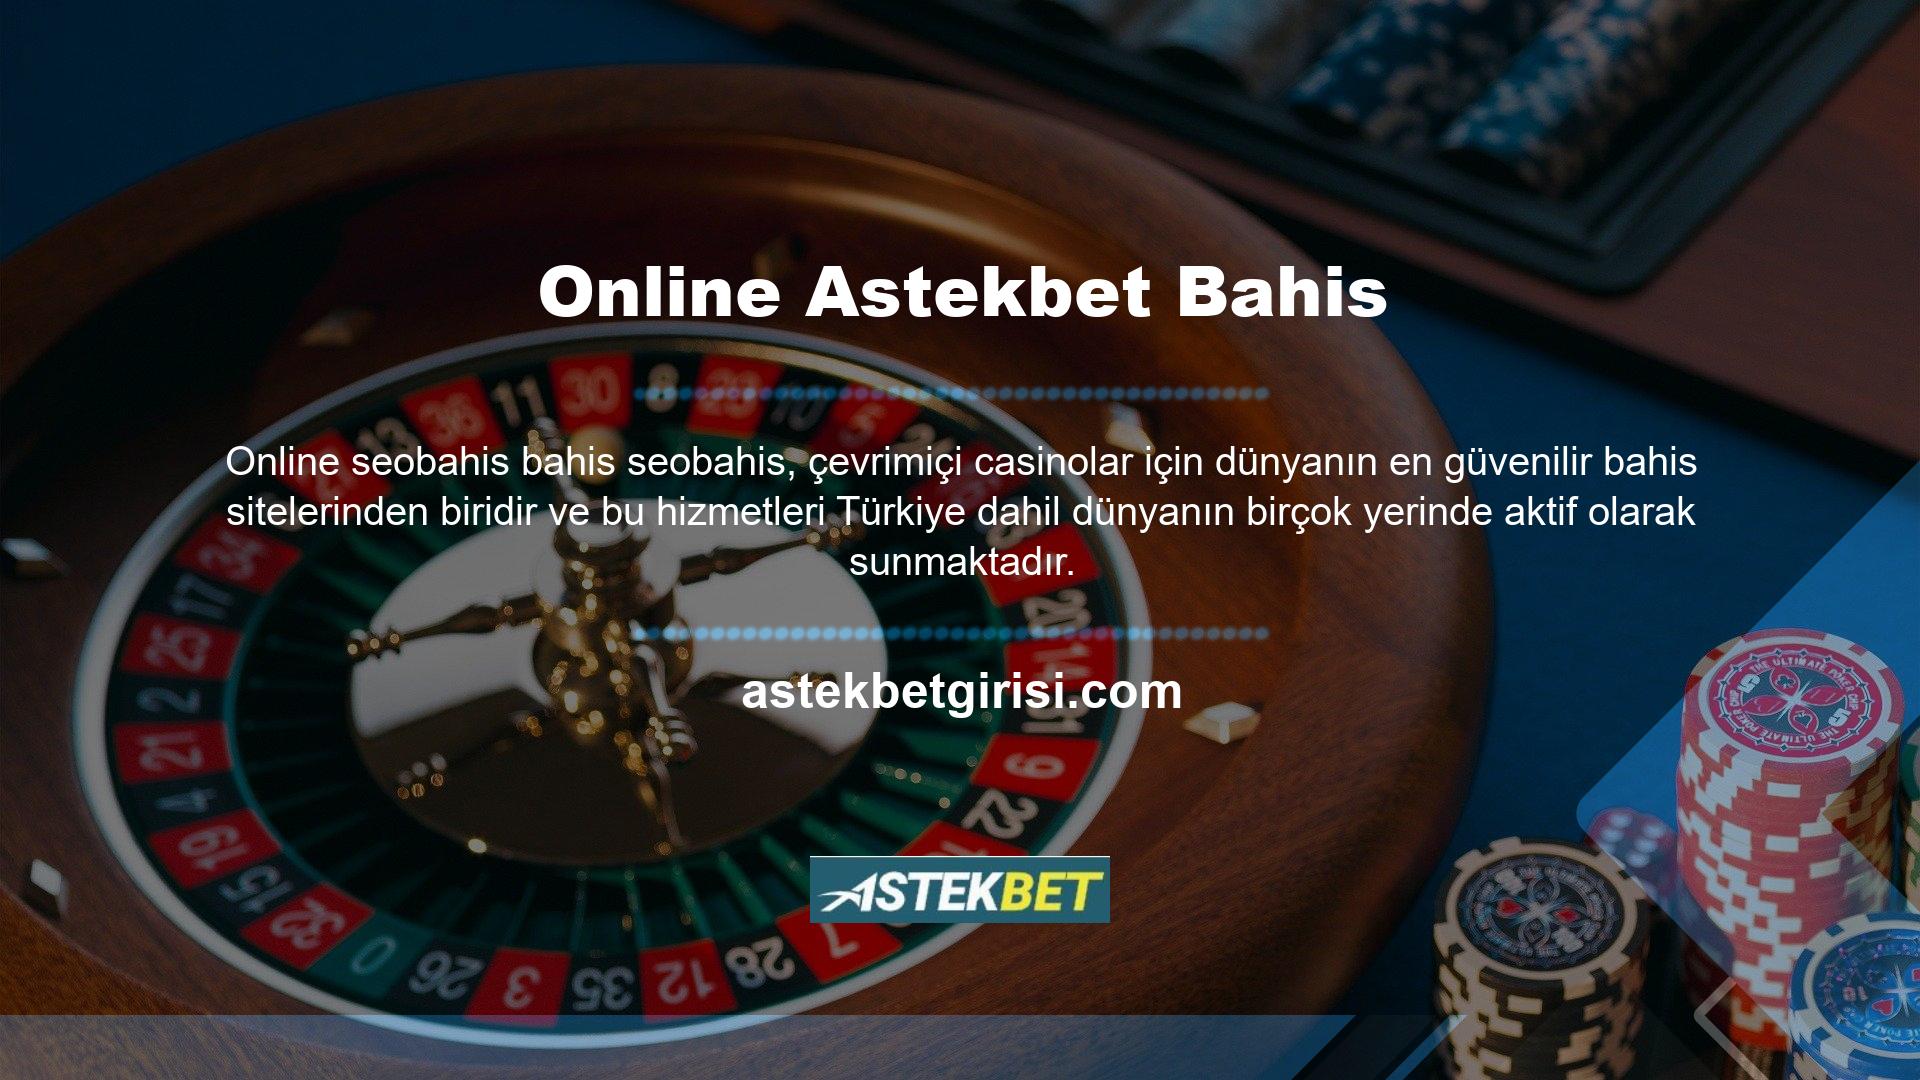 Astekbet online bahis, casino sektörünün 1 numarası olan ve Türkiye'de ve dünyanın birçok yerinde fırsatlar sunan site sayesinde Türk online casino sektöründeki güvenilirlik sorunlarını tamamen ortadan kaldırmıştır